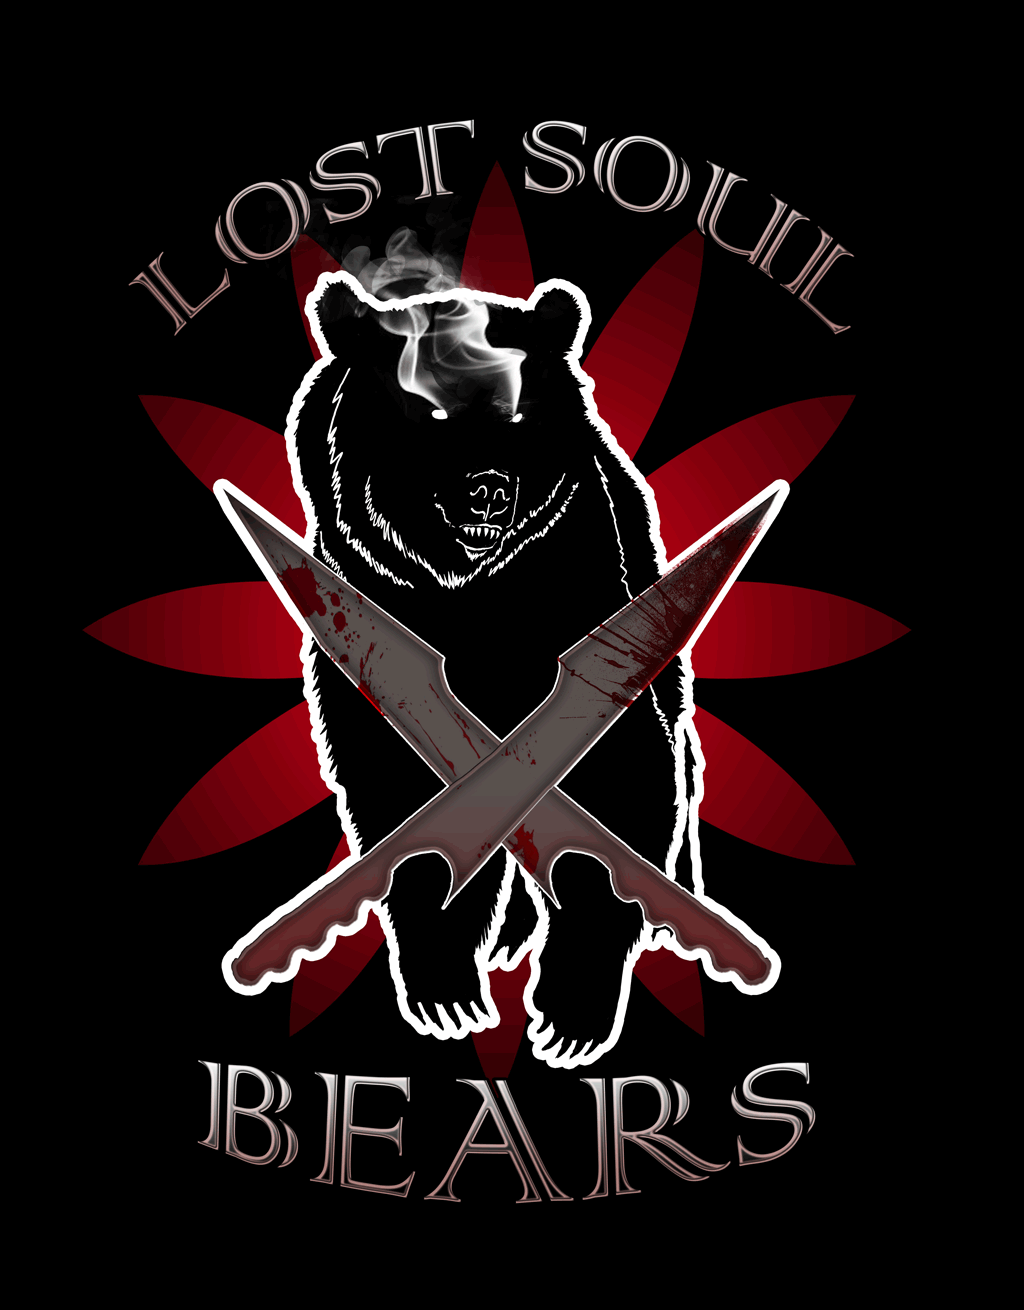 Lost Soul Bears